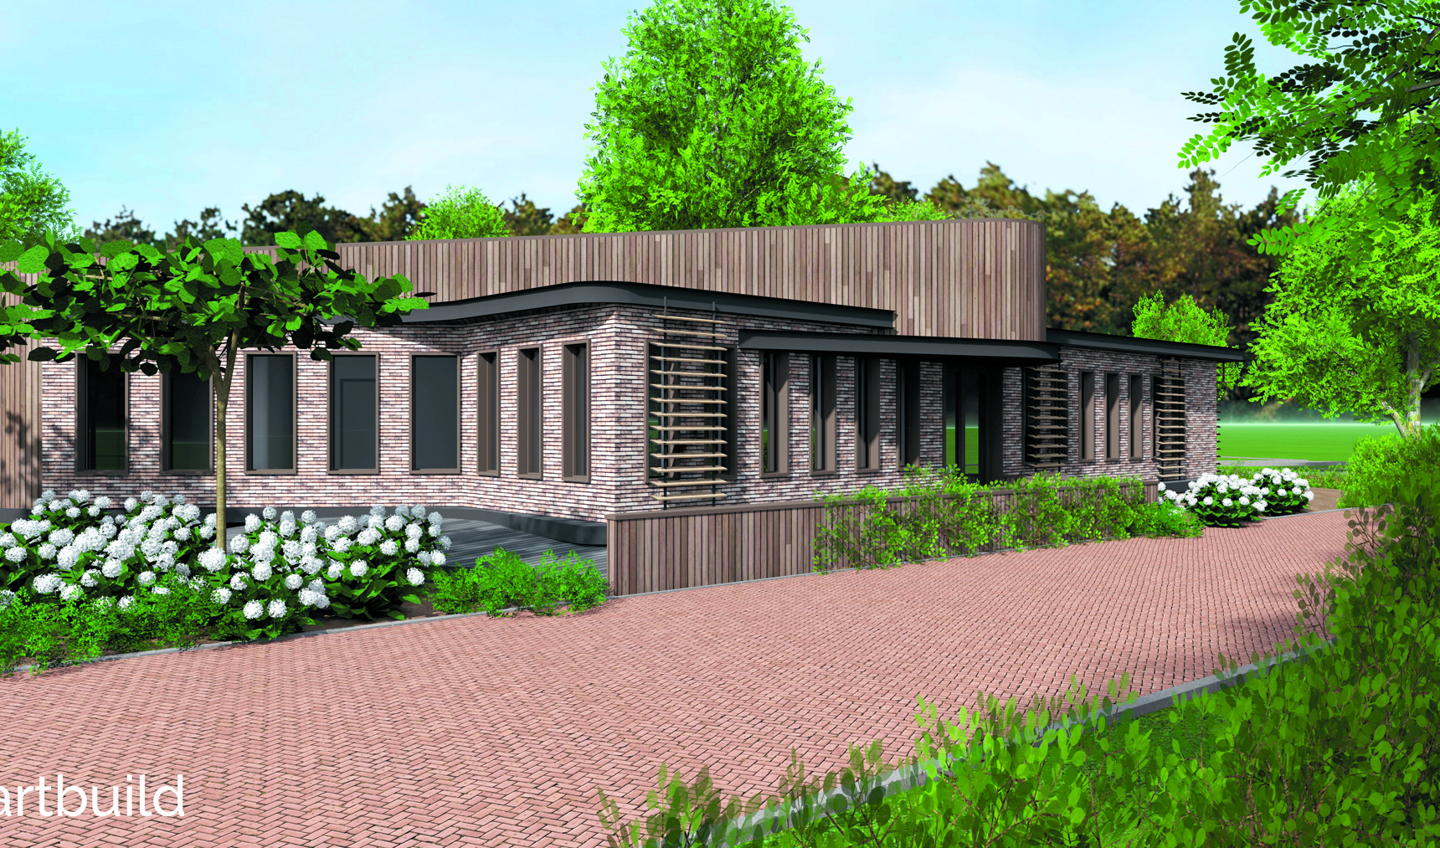 Op de plek van de vroegere speeltuin in Egmond aan Zee wordt in 2019 begonnen met de bouw van een hospice. (Foto: aangeleverd)